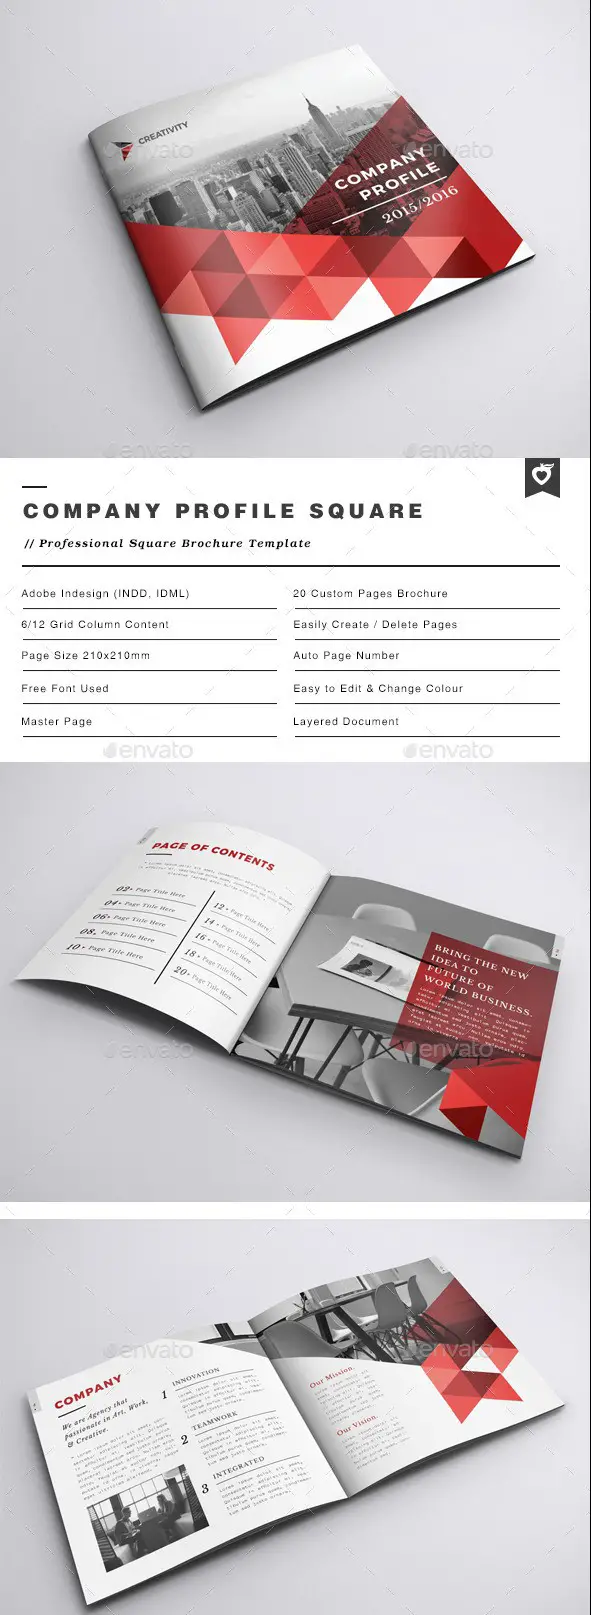 Company Profile Square Brochure